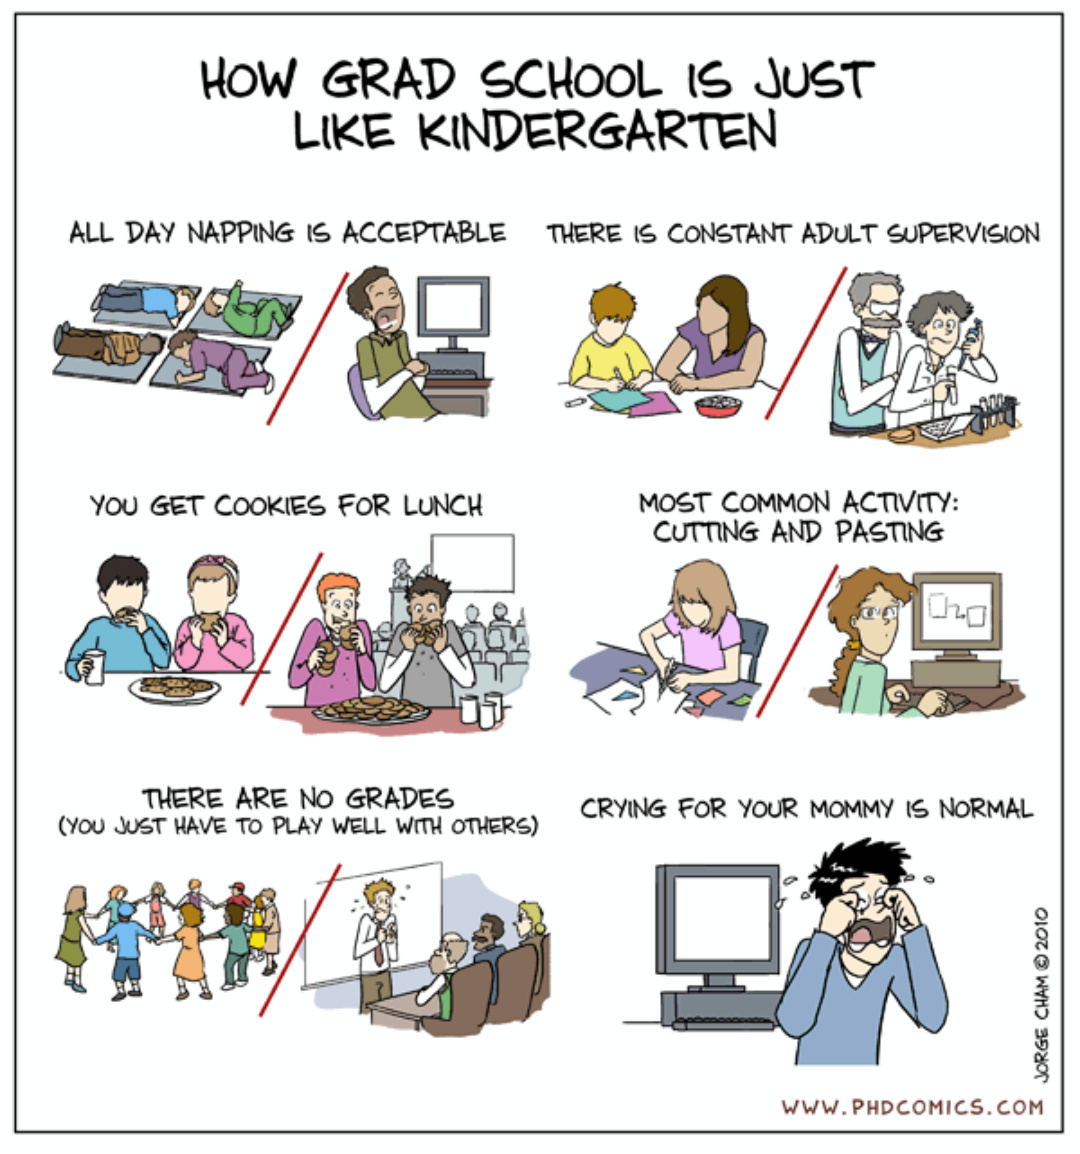 Kindergarten vs Grad school - Meme subido por The_demon :) Memedroid